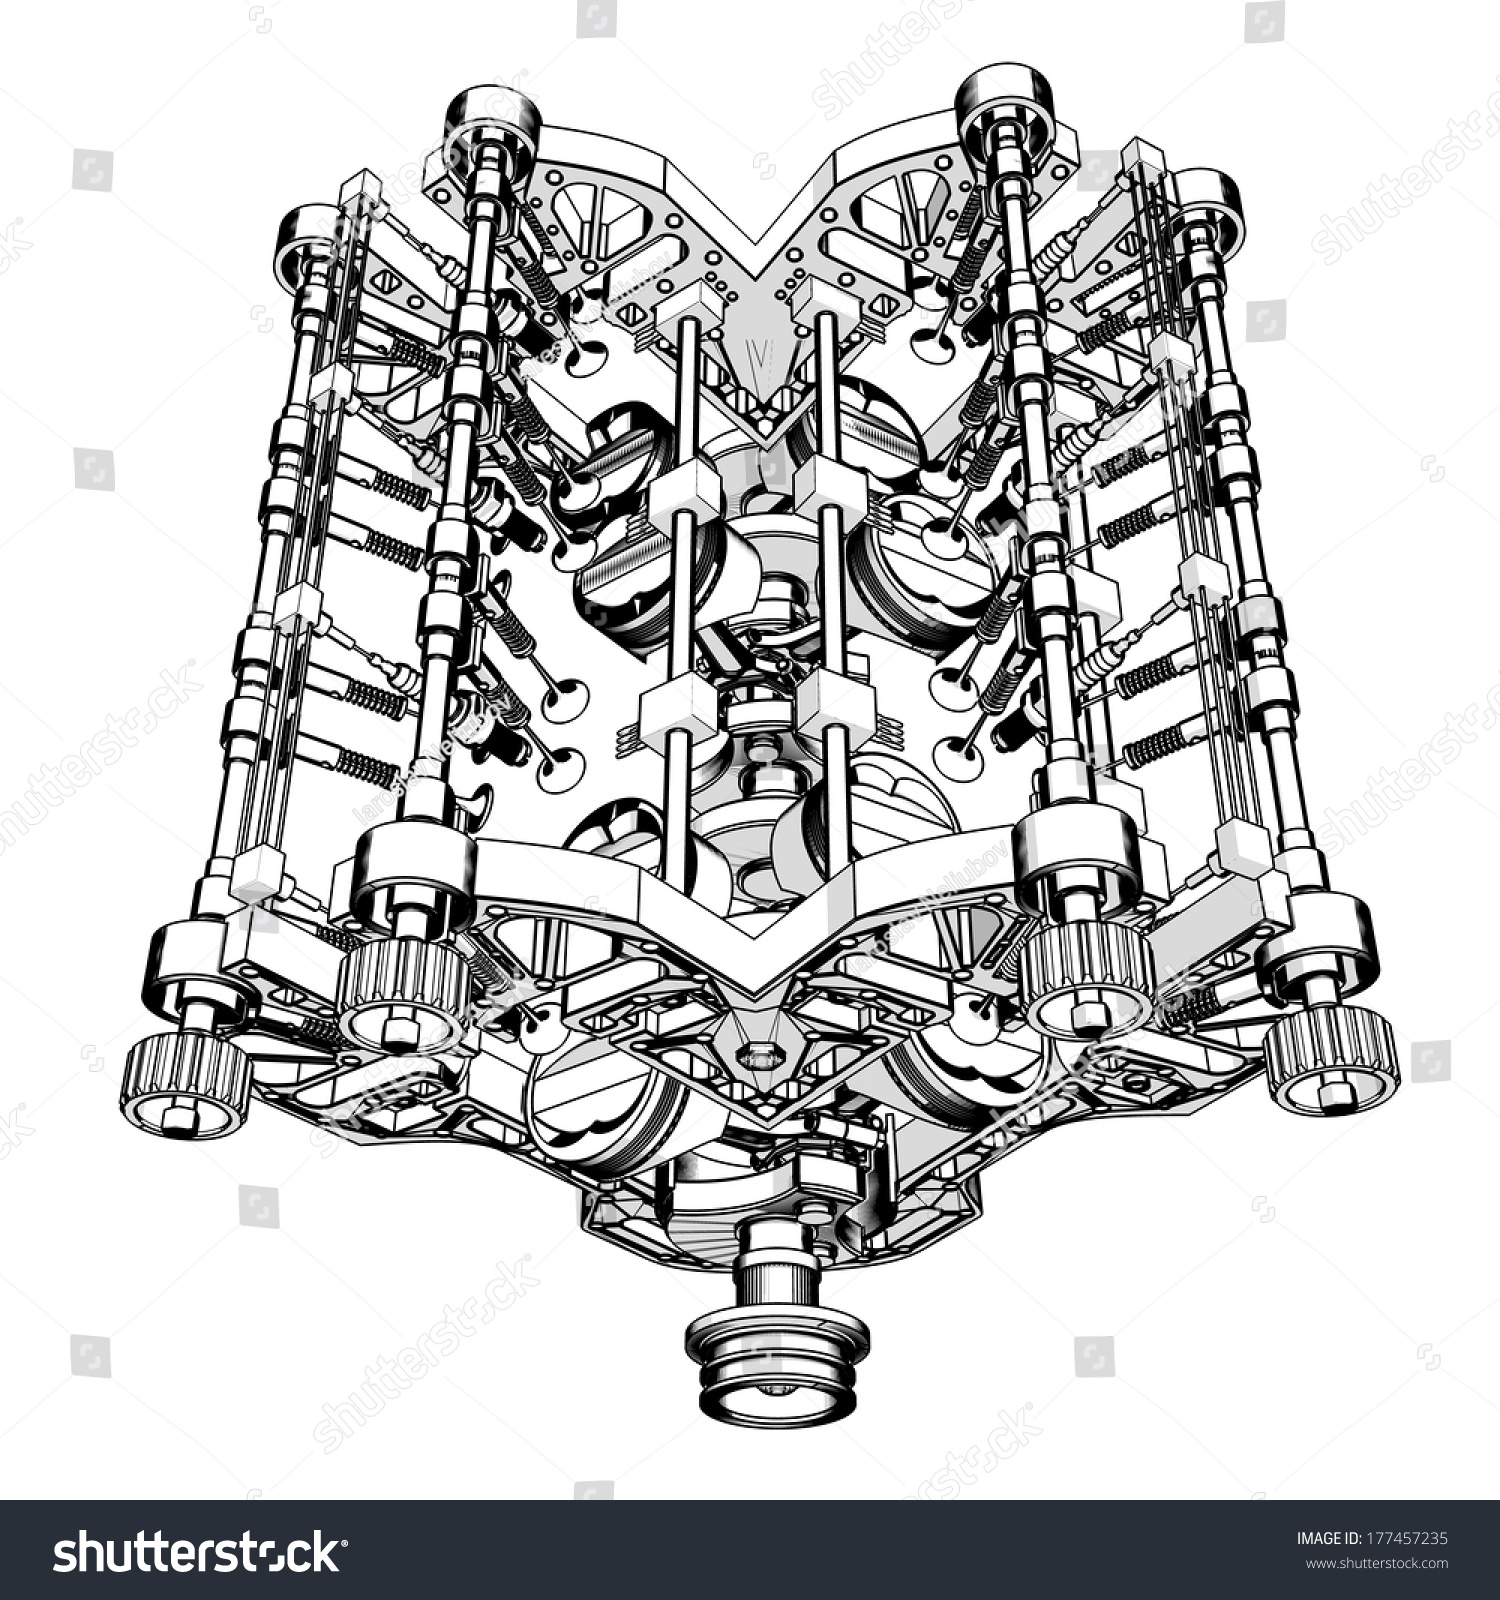 V8 Car Engine Cartoon Illustration Outline. High Resolution 177457235